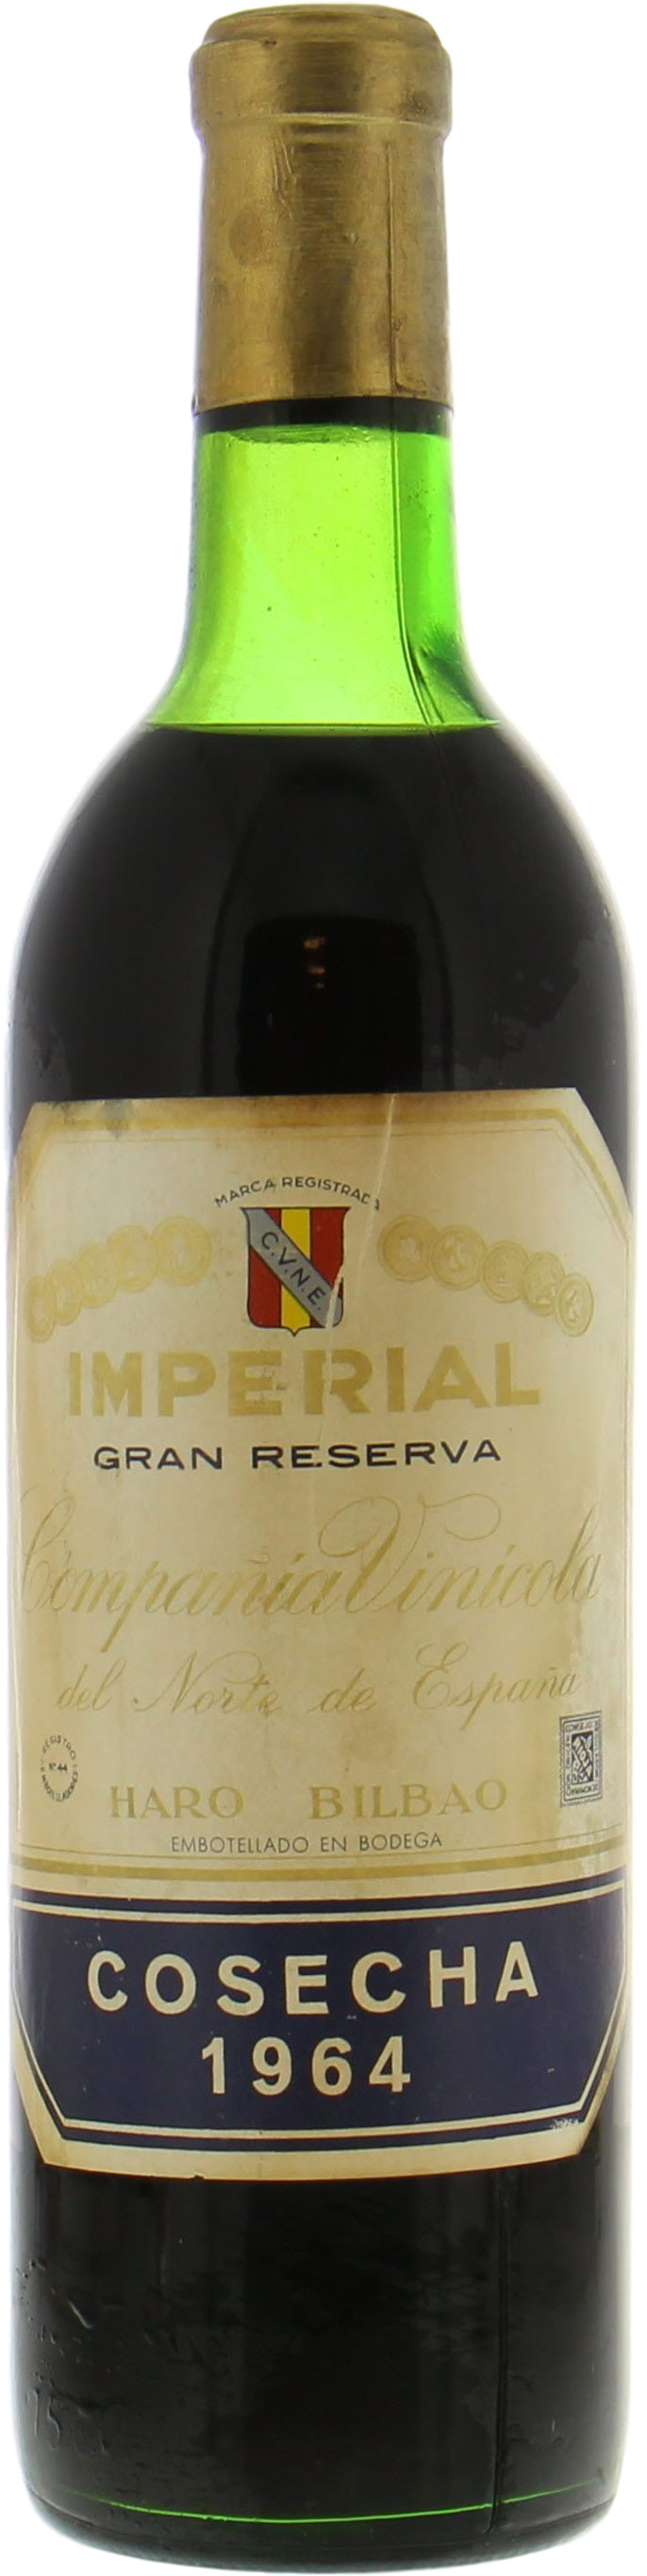 CVNE - Imperial Gran Reserva 1964